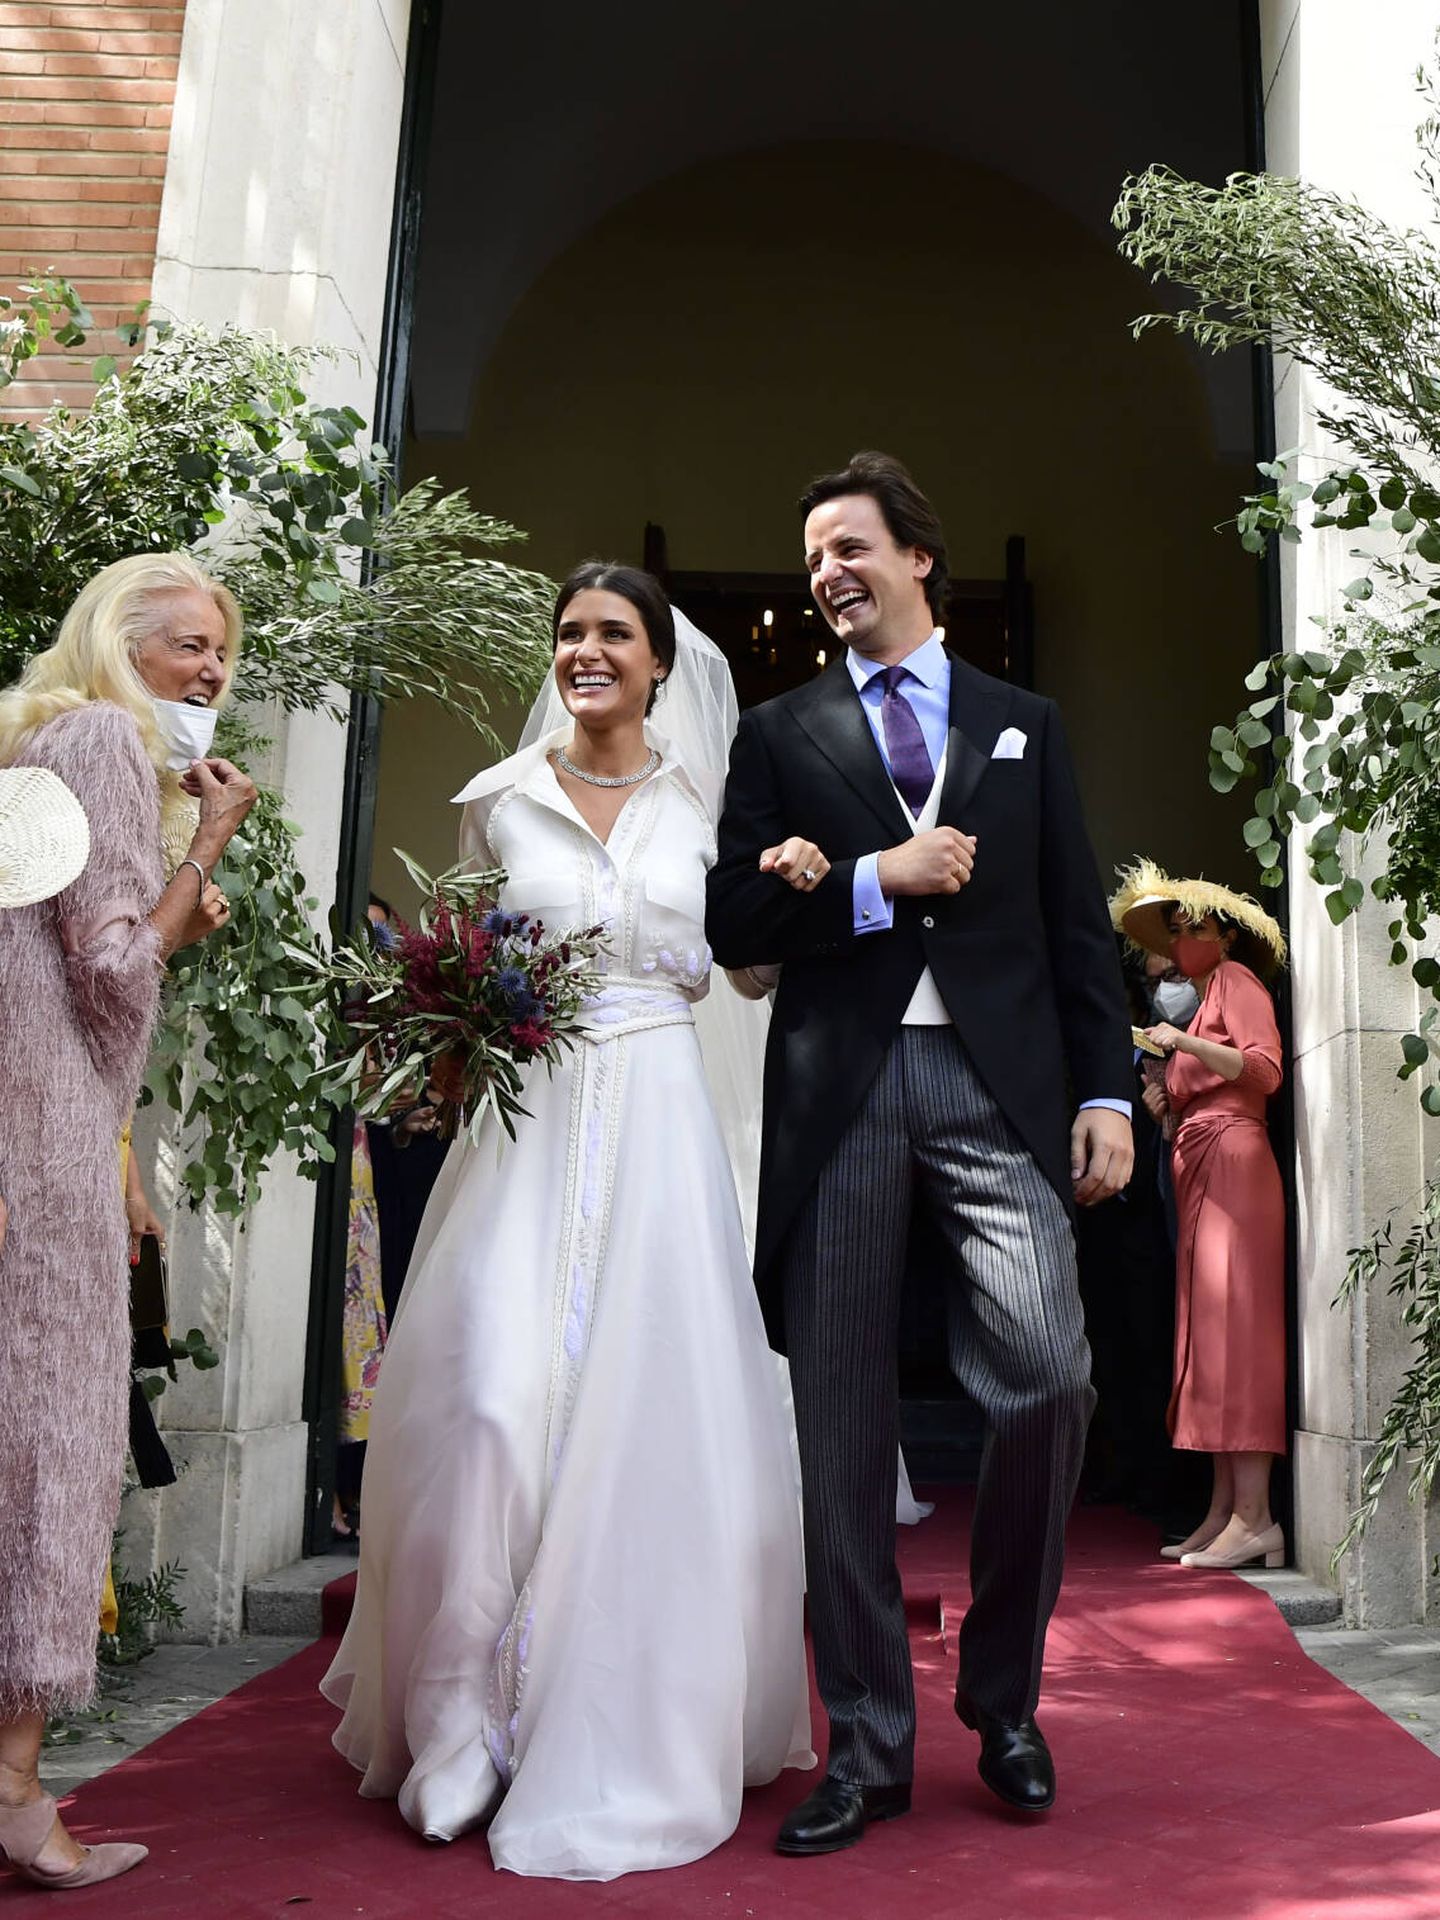 Lucía Martín Alcalde y Santiago Benjumea, recién casados. (Limited Pictures)